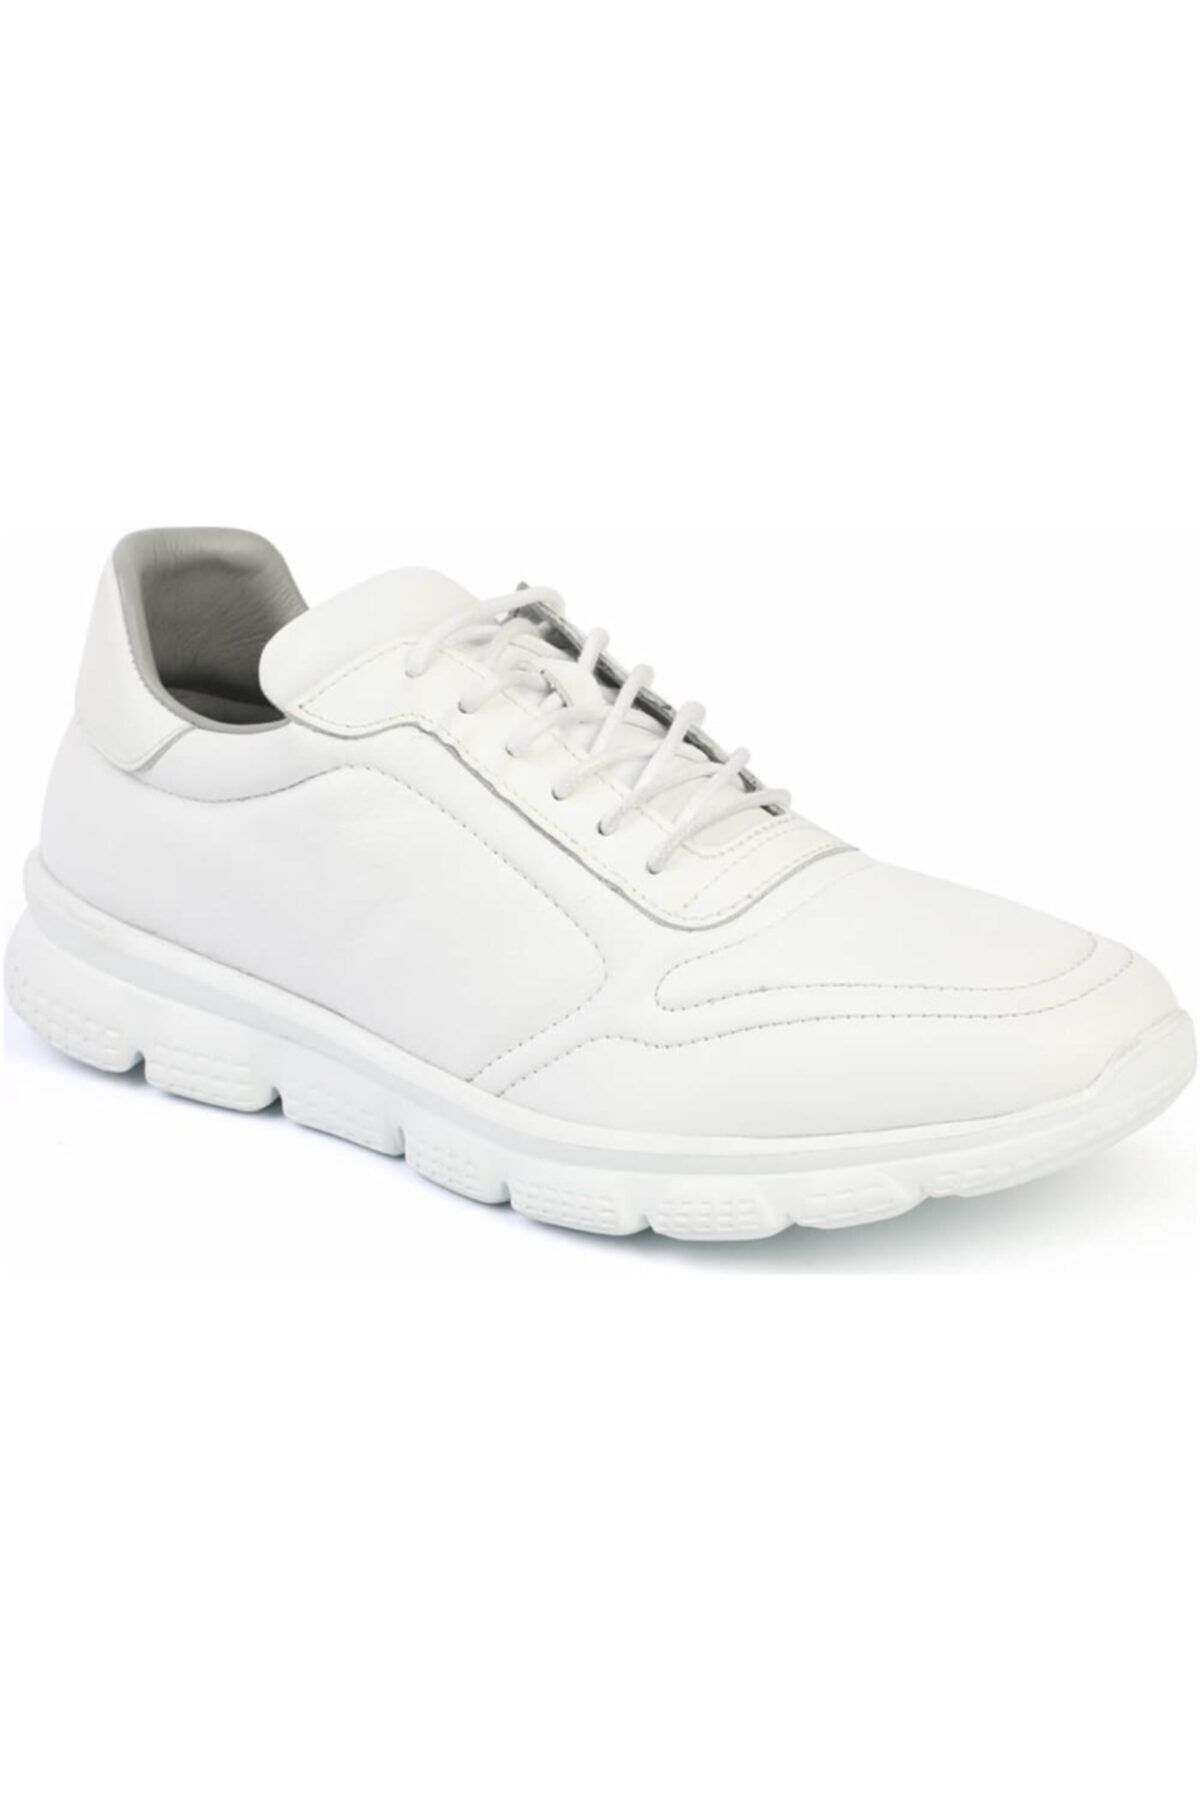 Libero 3121 Erkek Spor Ayakkabı Beyaz